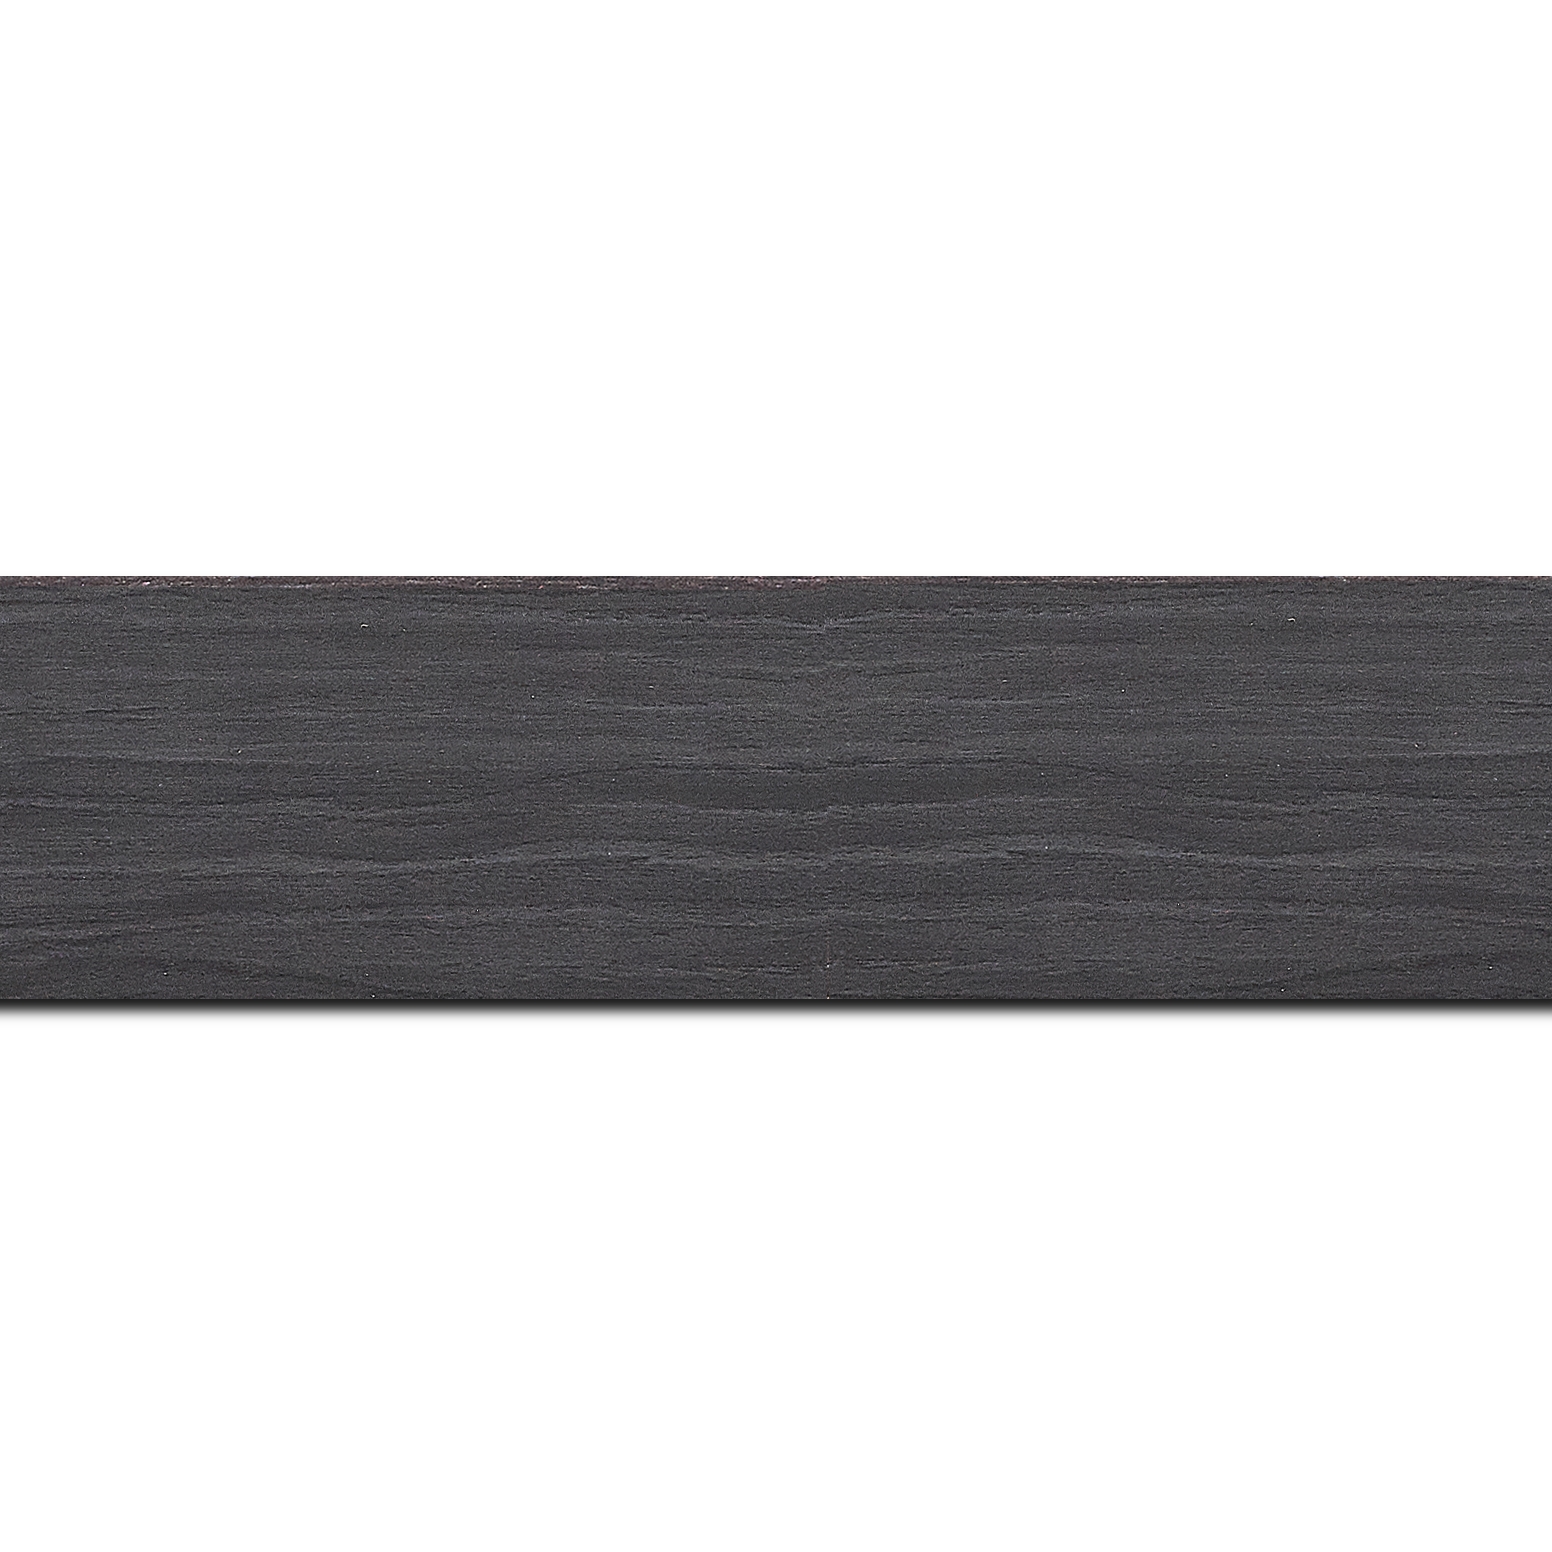 Pack par 12m, bois profil plat largeur 4.2cm décor bois noir ébène(longueur baguette pouvant varier entre 2.40m et 3m selon arrivage des bois)